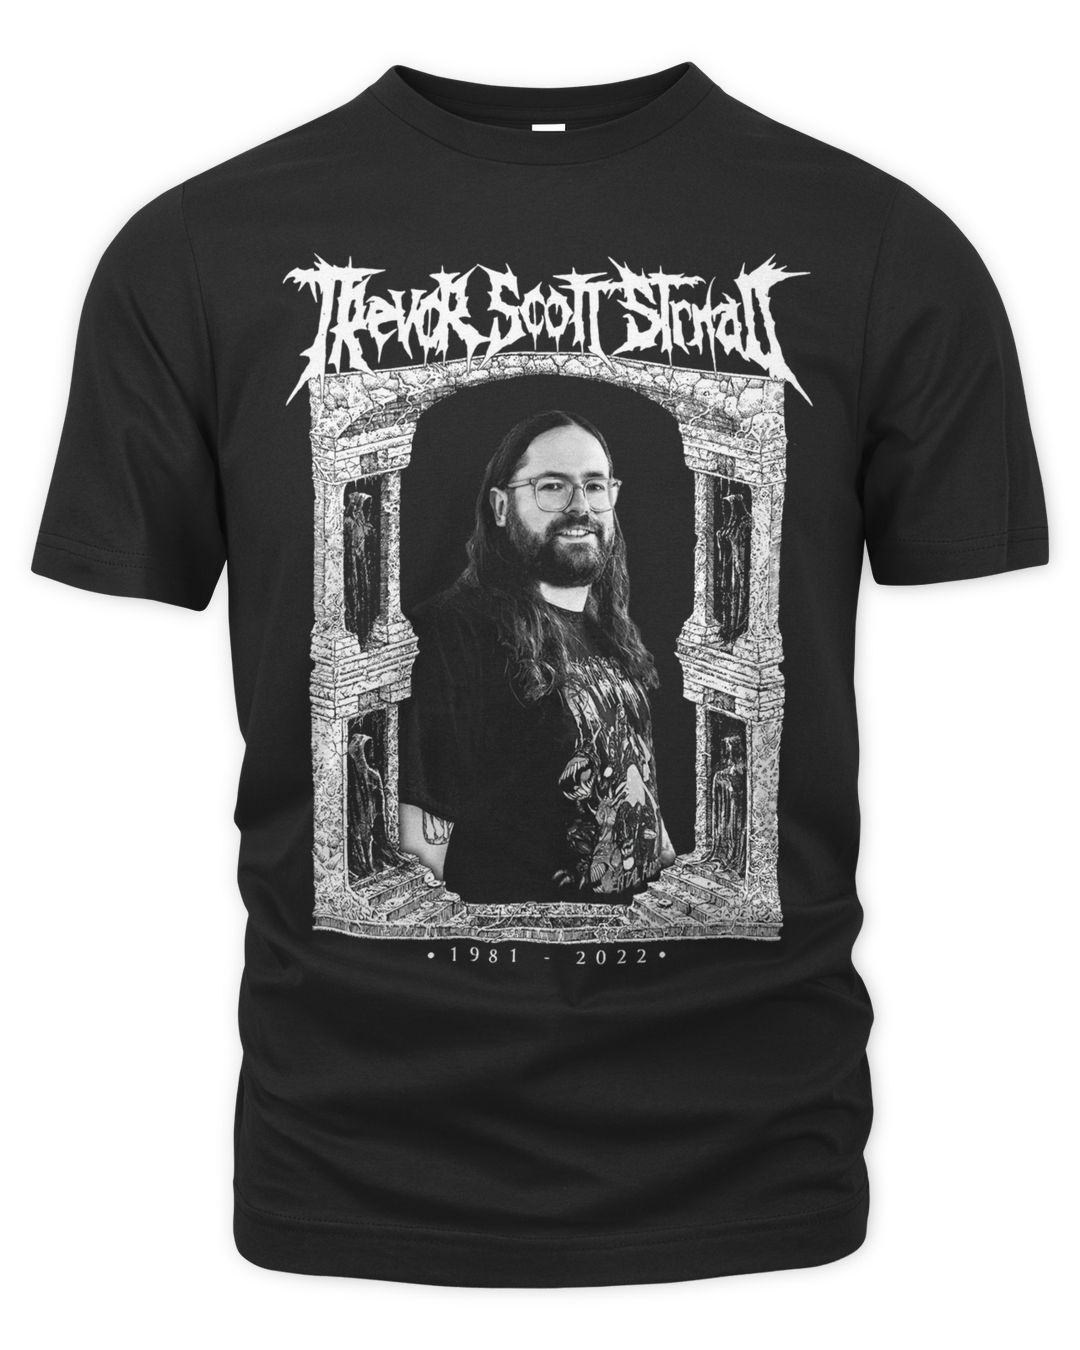 Nightshift Merch Trevor Scott Strnad Memorial Shirt